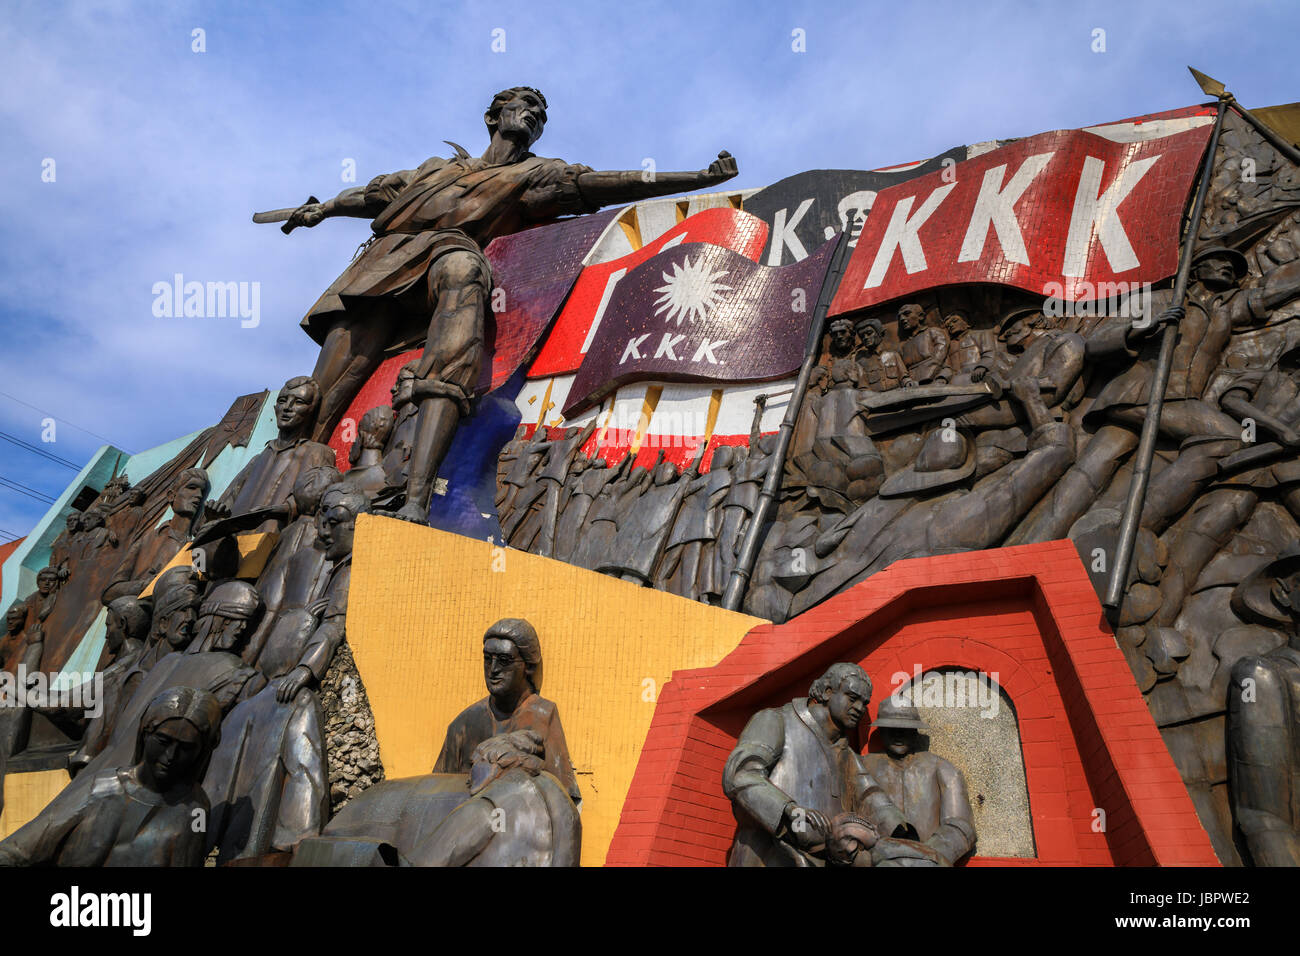 27. November 2016 Katipunan (abgekürzt KKK) Denkmal in Manila, Philippinen - Outdoor-Wahrzeichen Stockfoto